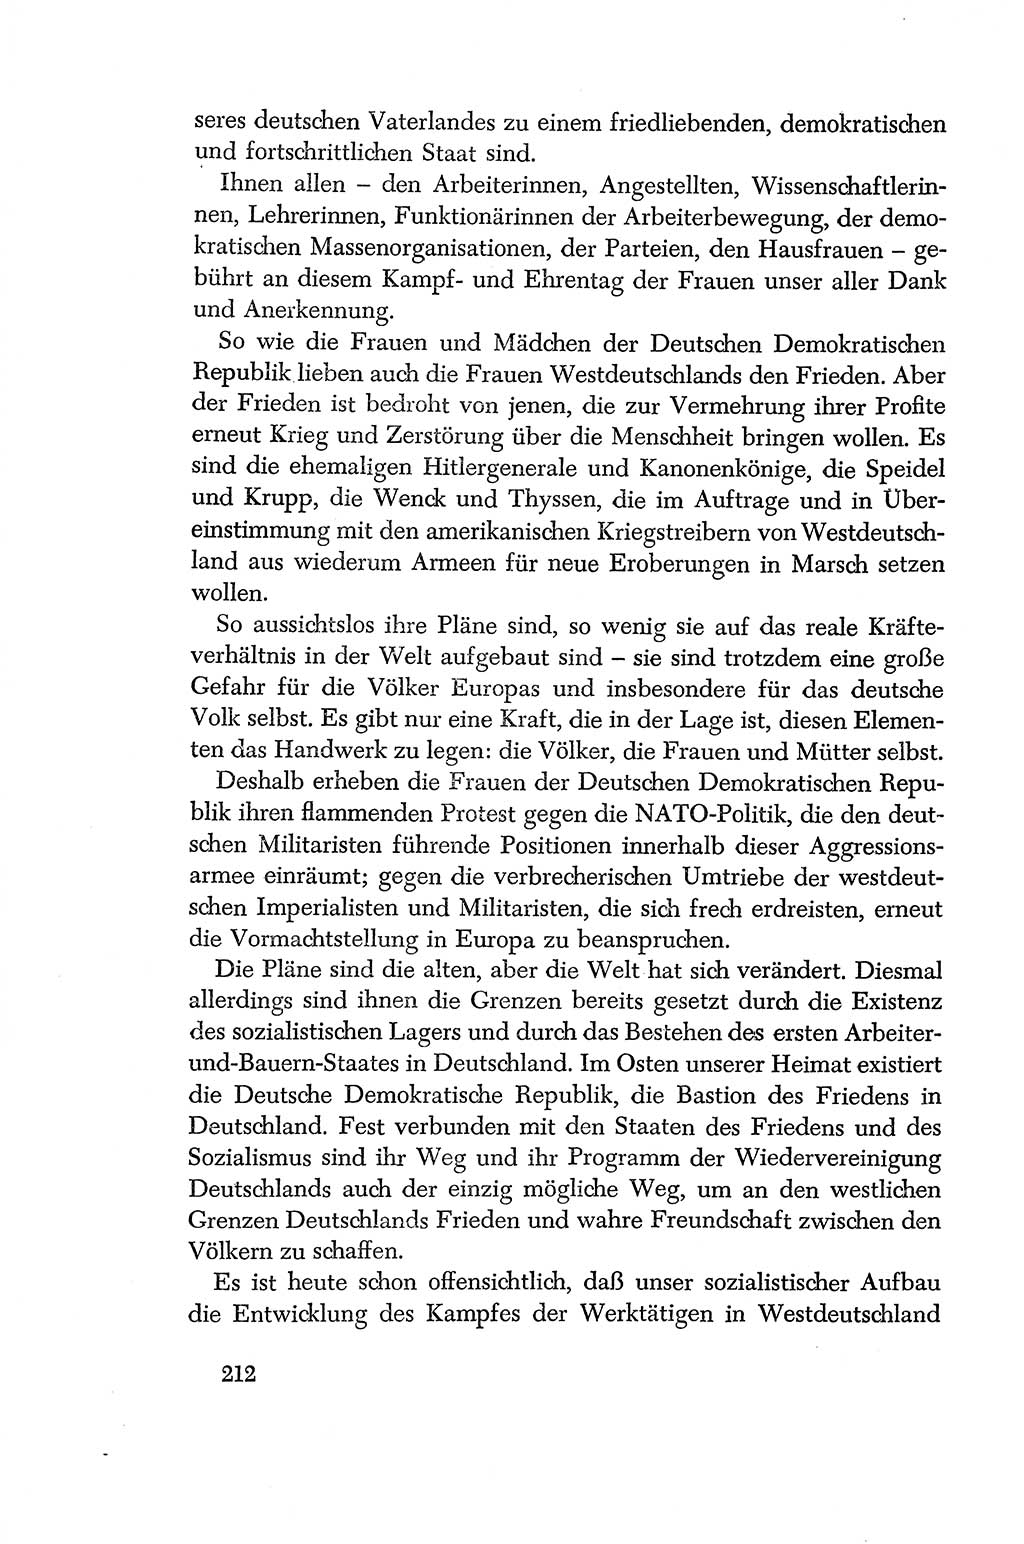 Dokumente der Sozialistischen Einheitspartei Deutschlands (SED) [Deutsche Demokratische Republik (DDR)] 1956-1957, Seite 212 (Dok. SED DDR 1956-1957, S. 212)